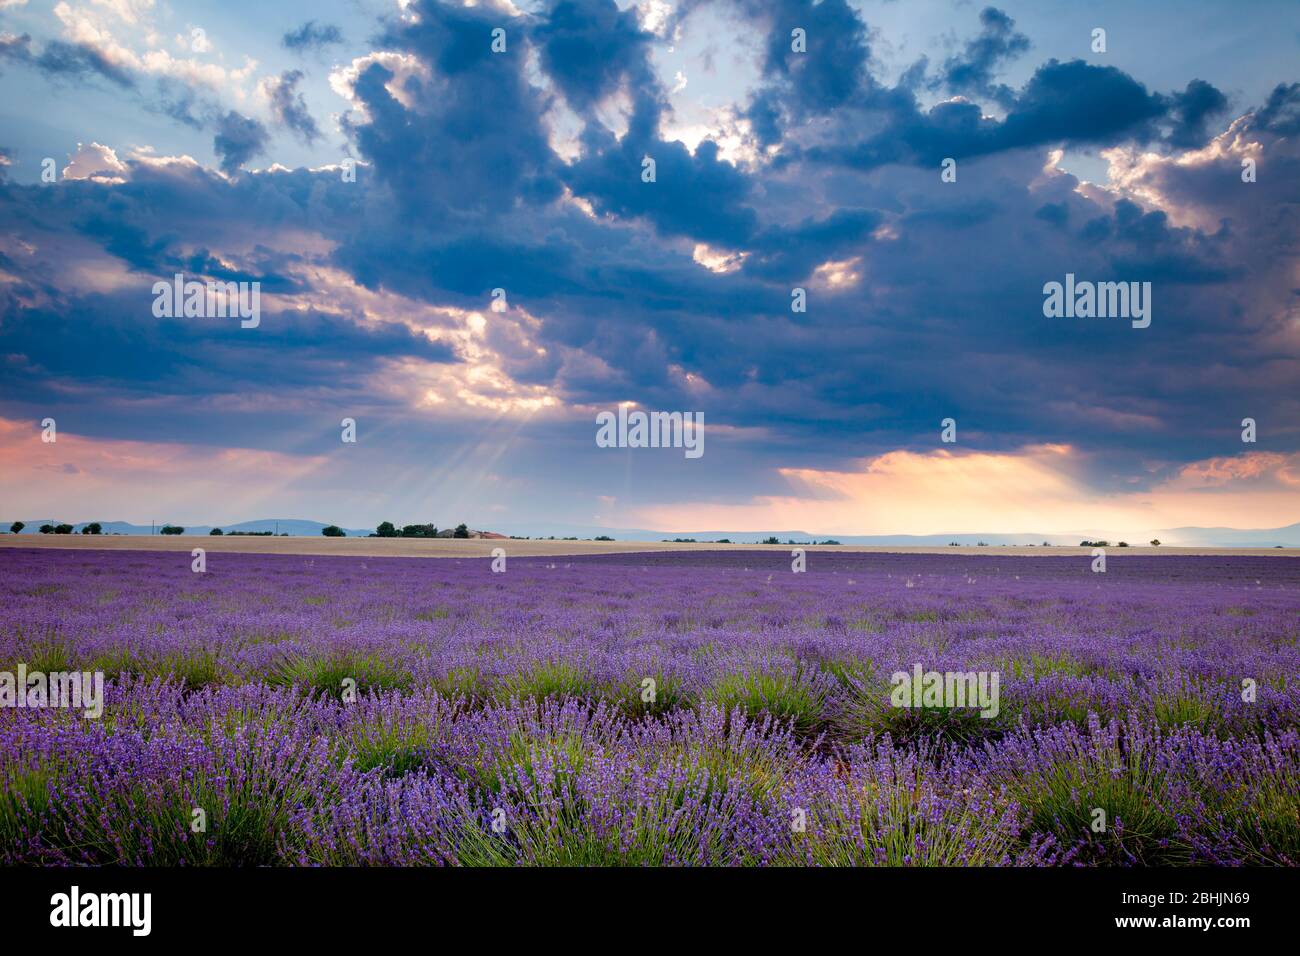 Soirée nuageux sur le champ de Lavender près de Valensole, Provence, France Banque D'Images